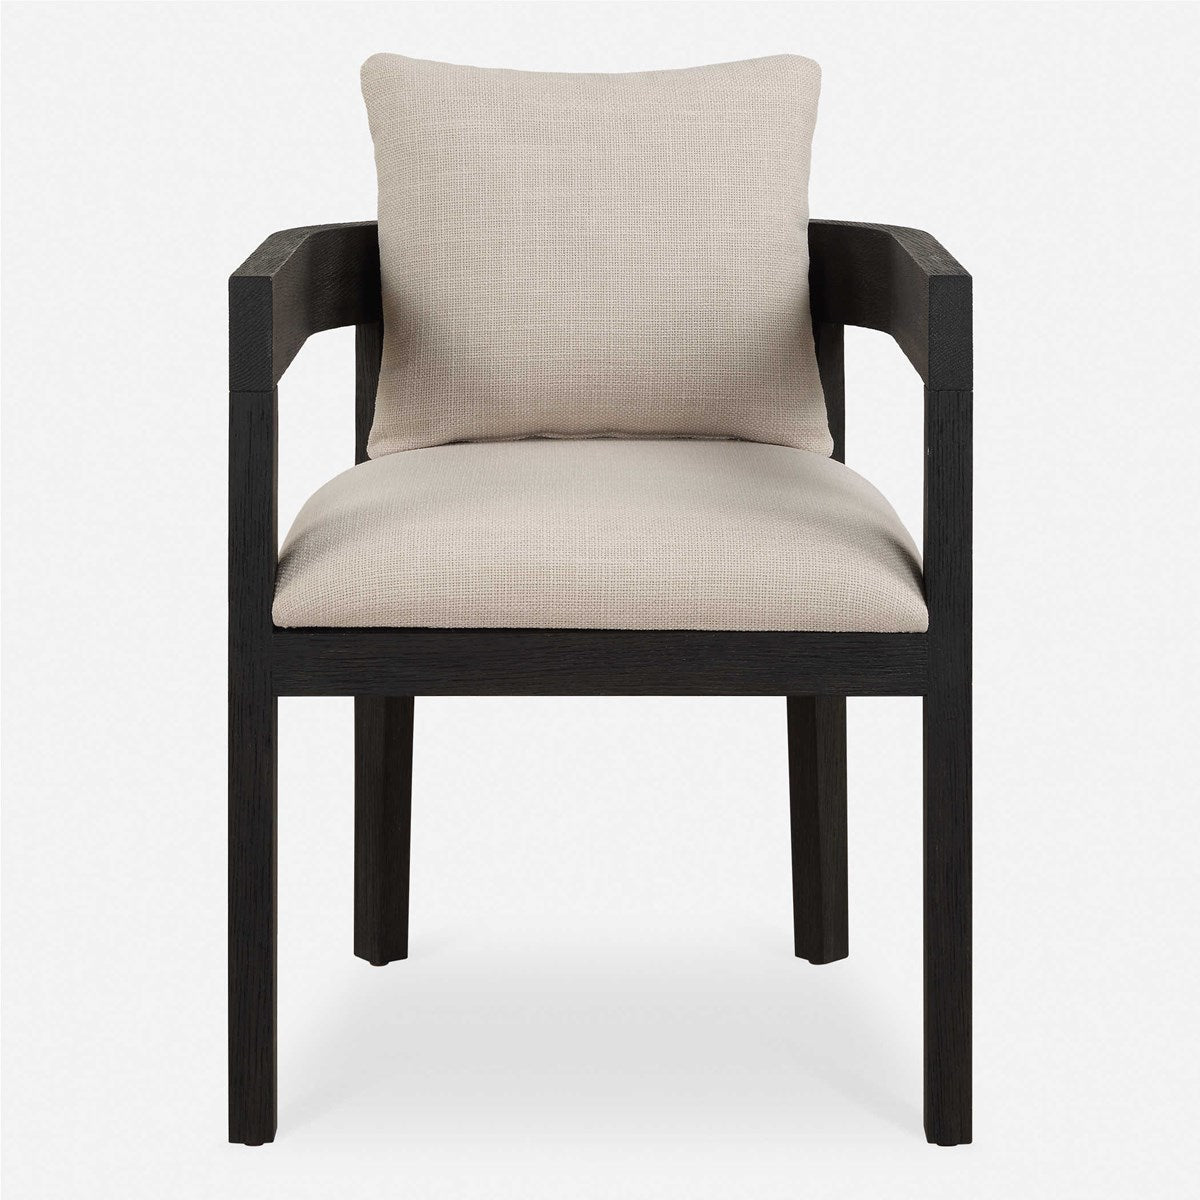 Uttermost - 23816 - Dining Chair - Balboa - Oak In A Rich Ebony Stain